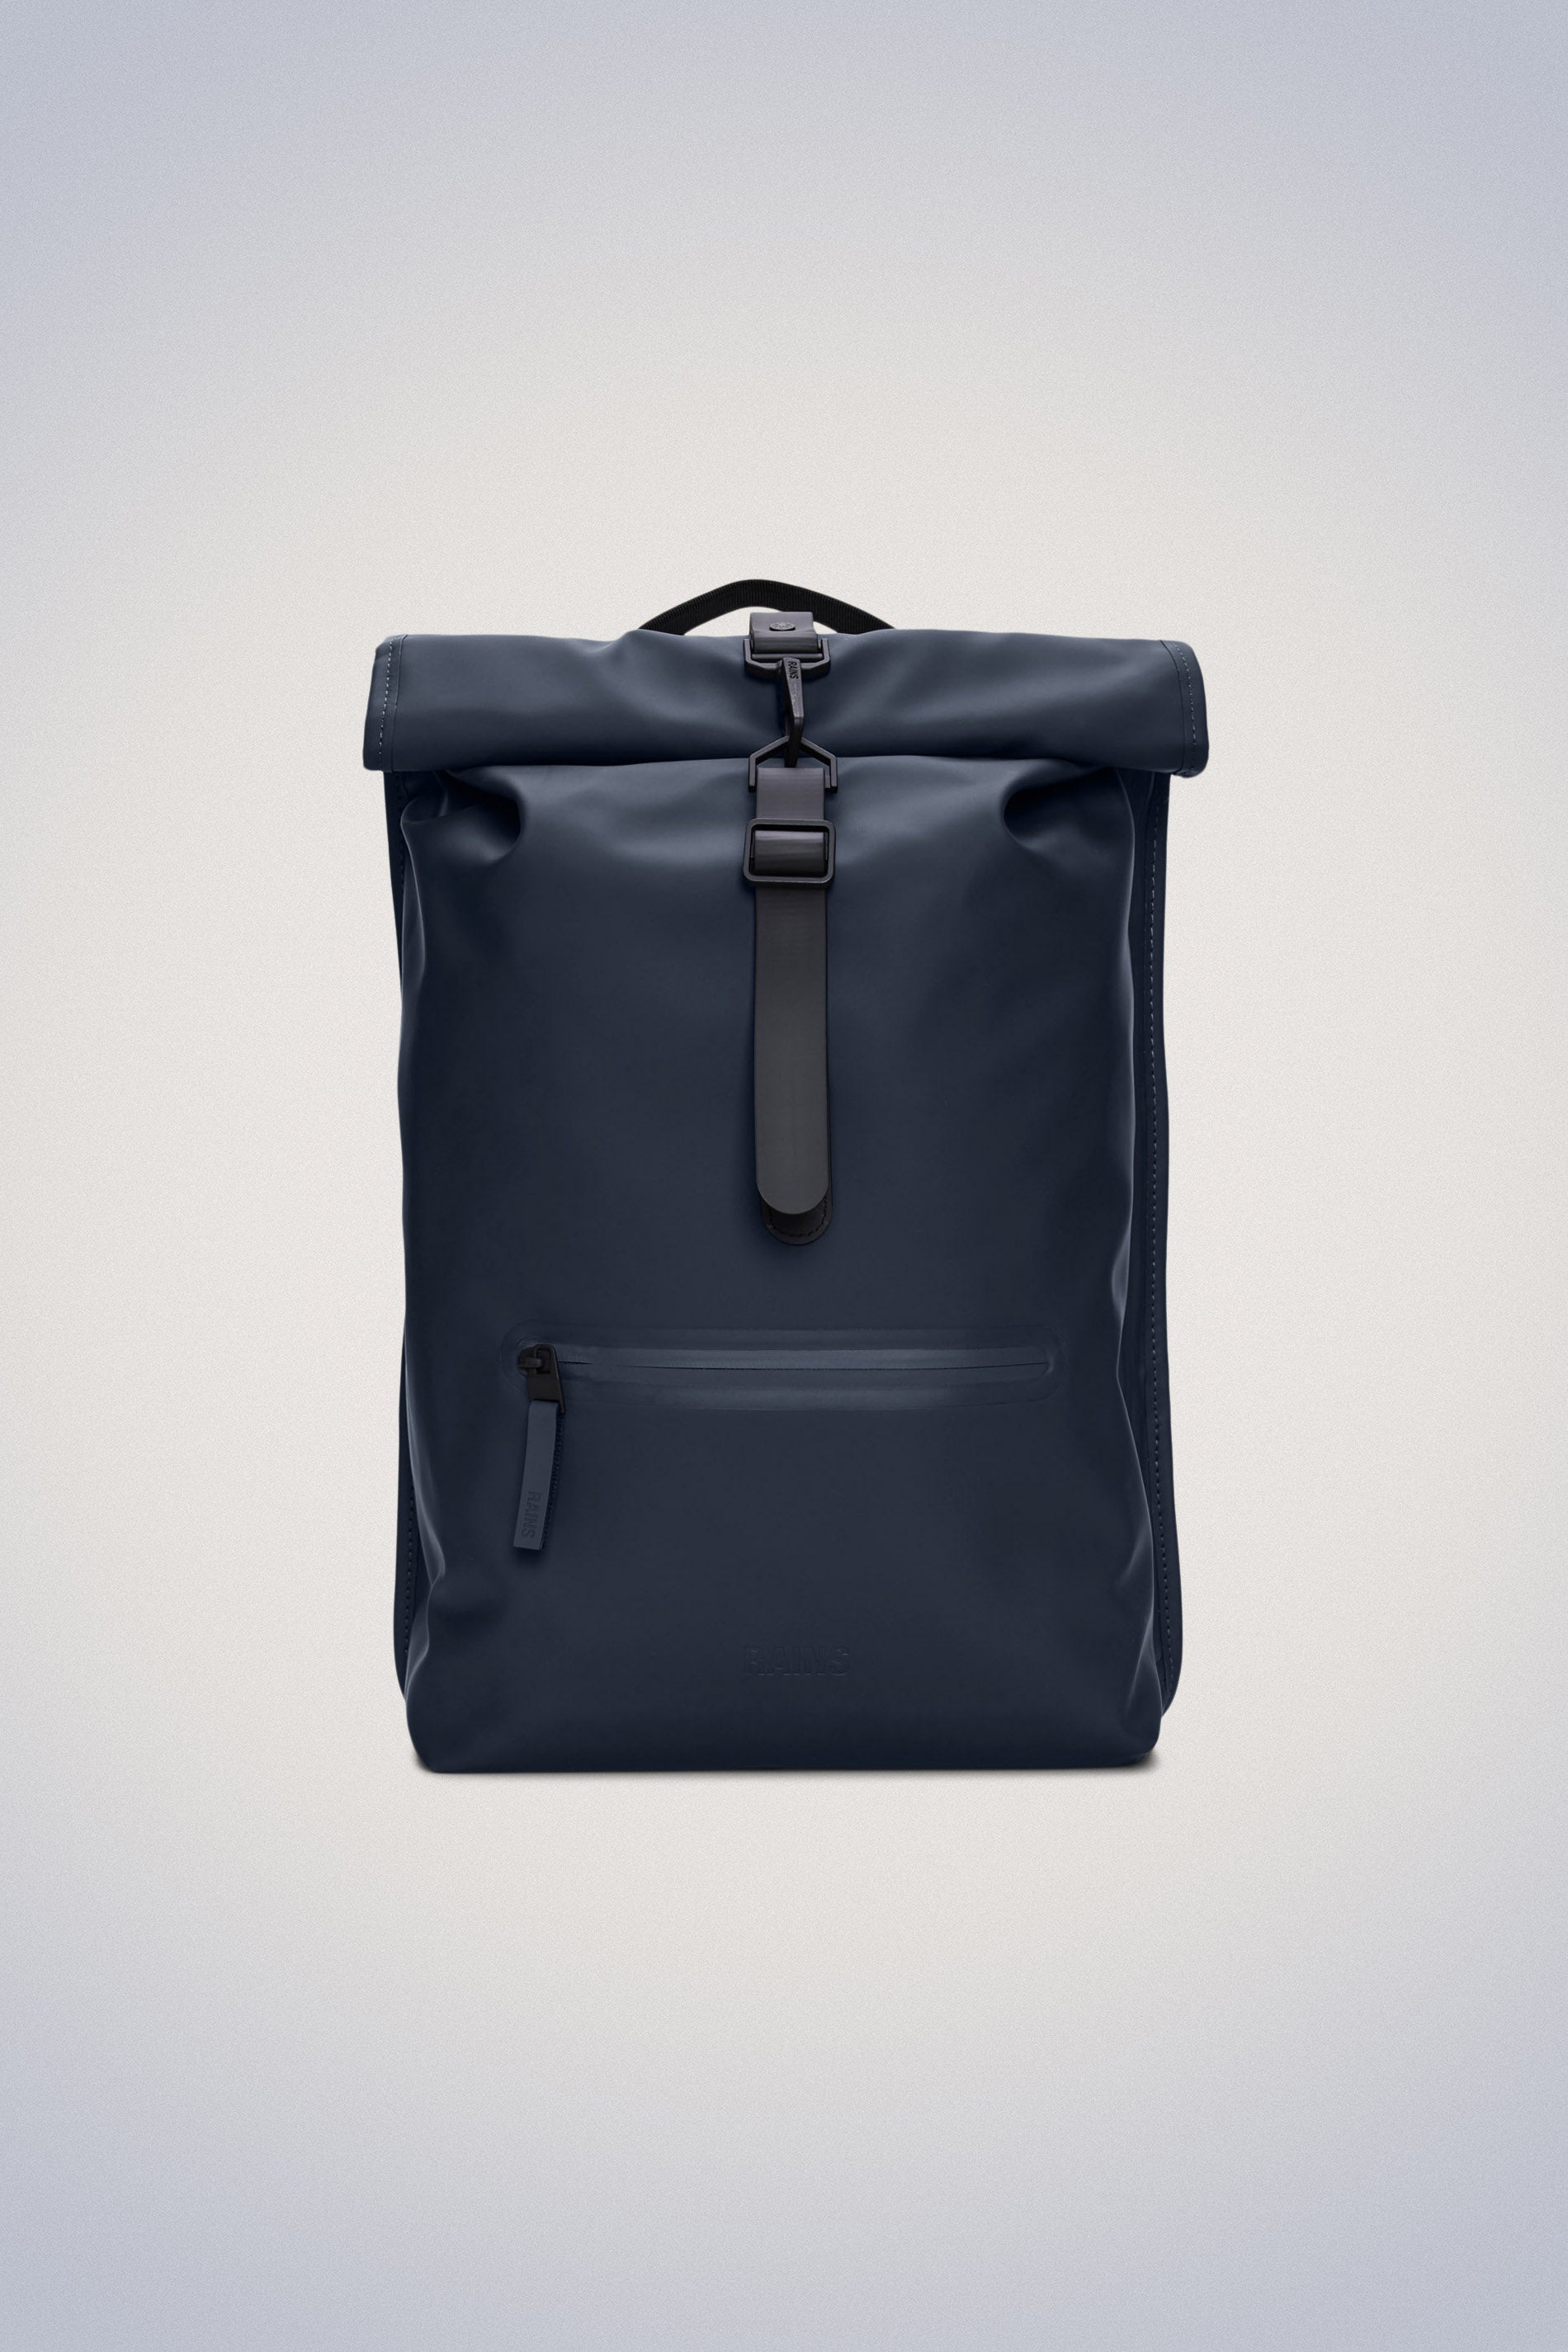 School Backpacks, Buy Durable & Waterproof Bags